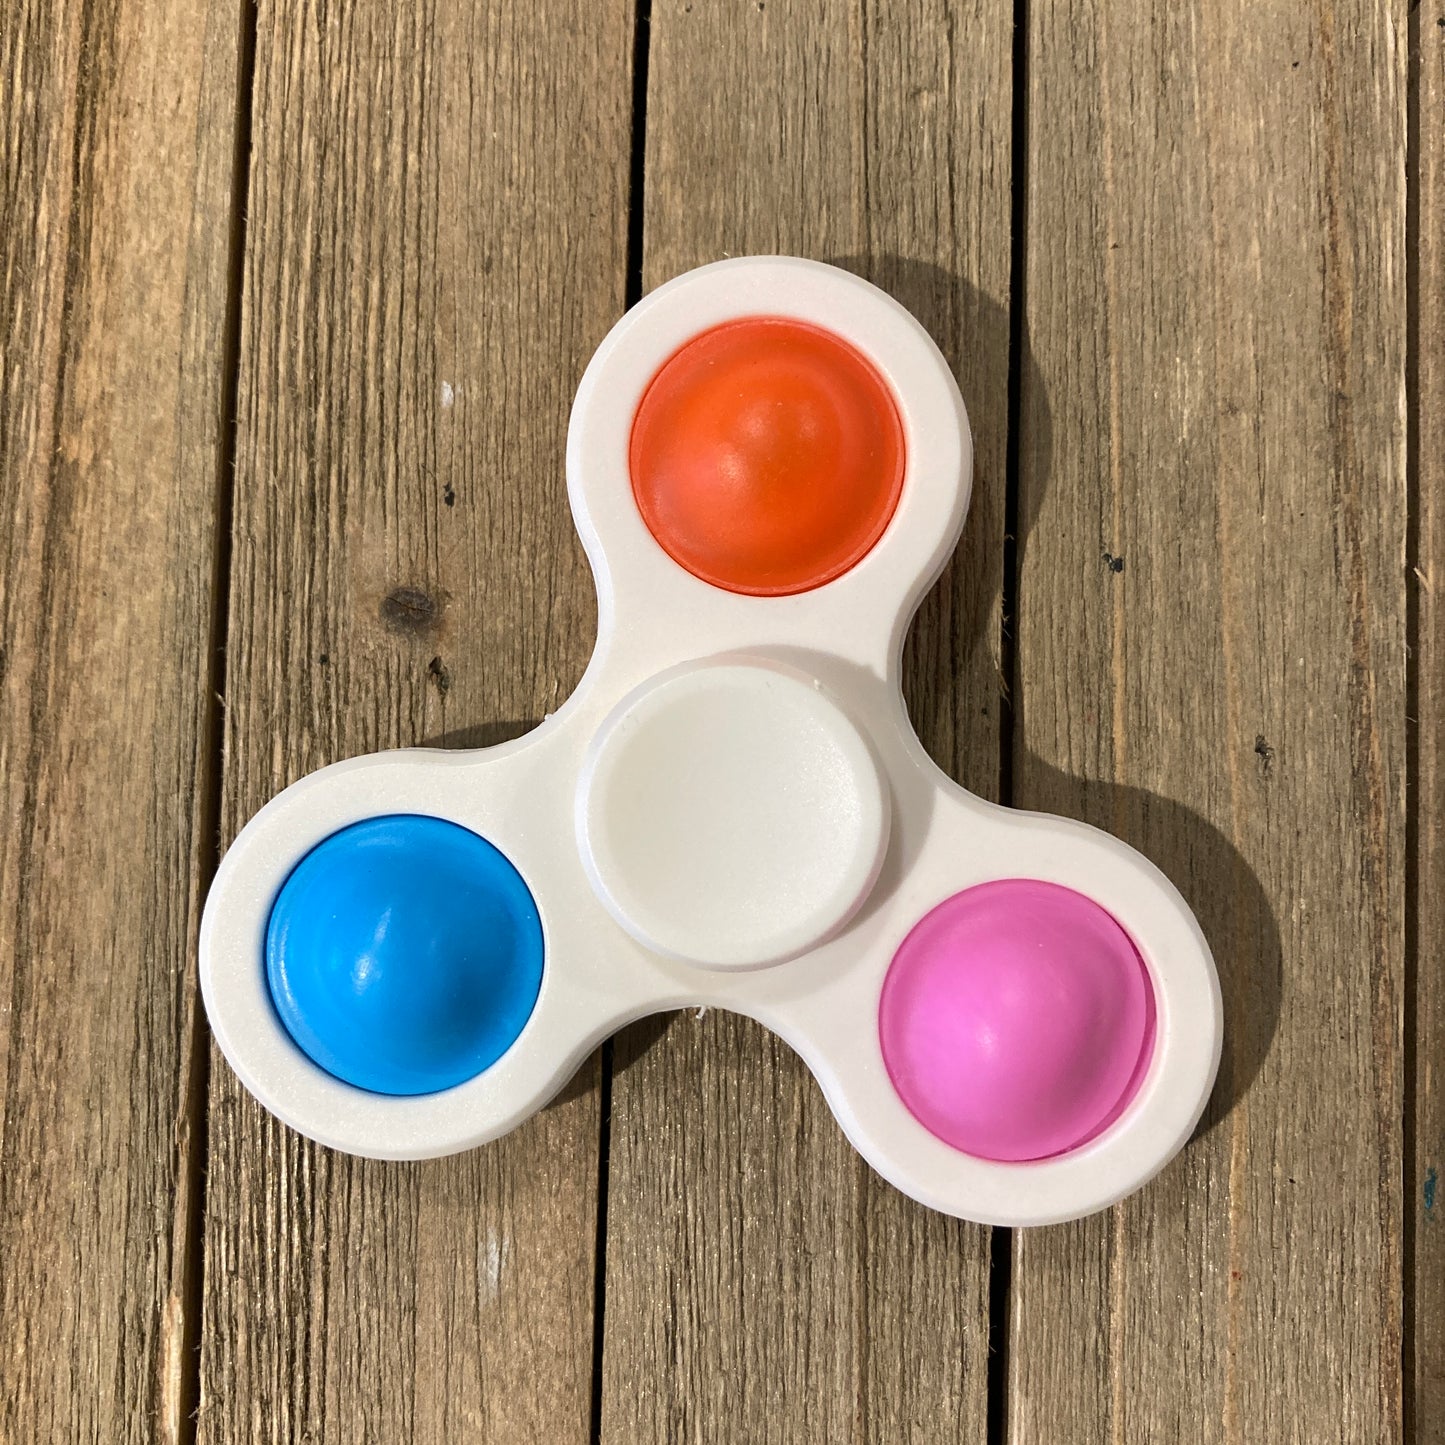 Classic 2-in-1 Pop-It Fidget Spinner Toy